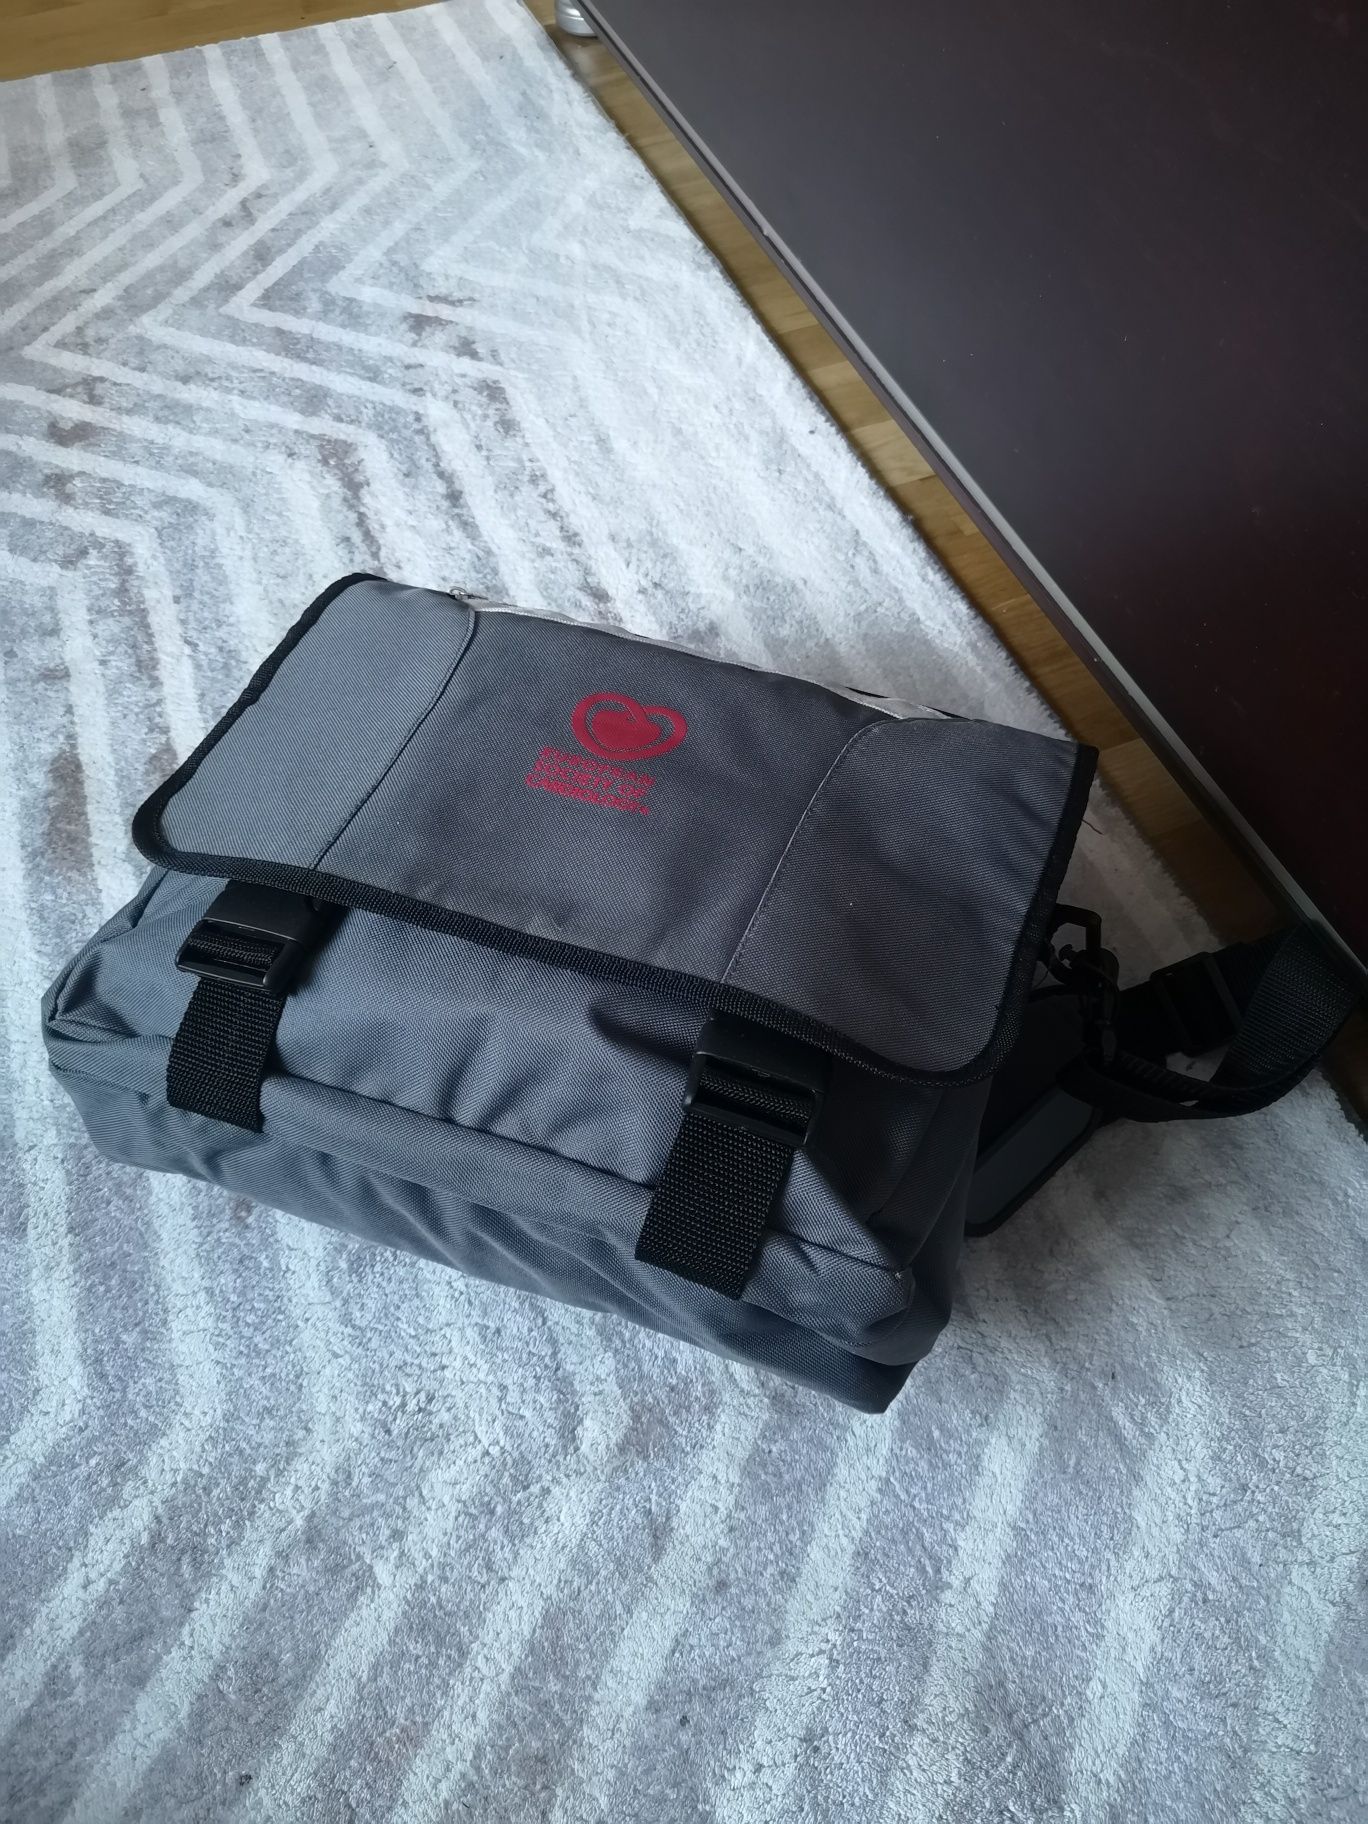 Torba podróżna aktówka na laptopa szara bagaż podręczny do samolotu